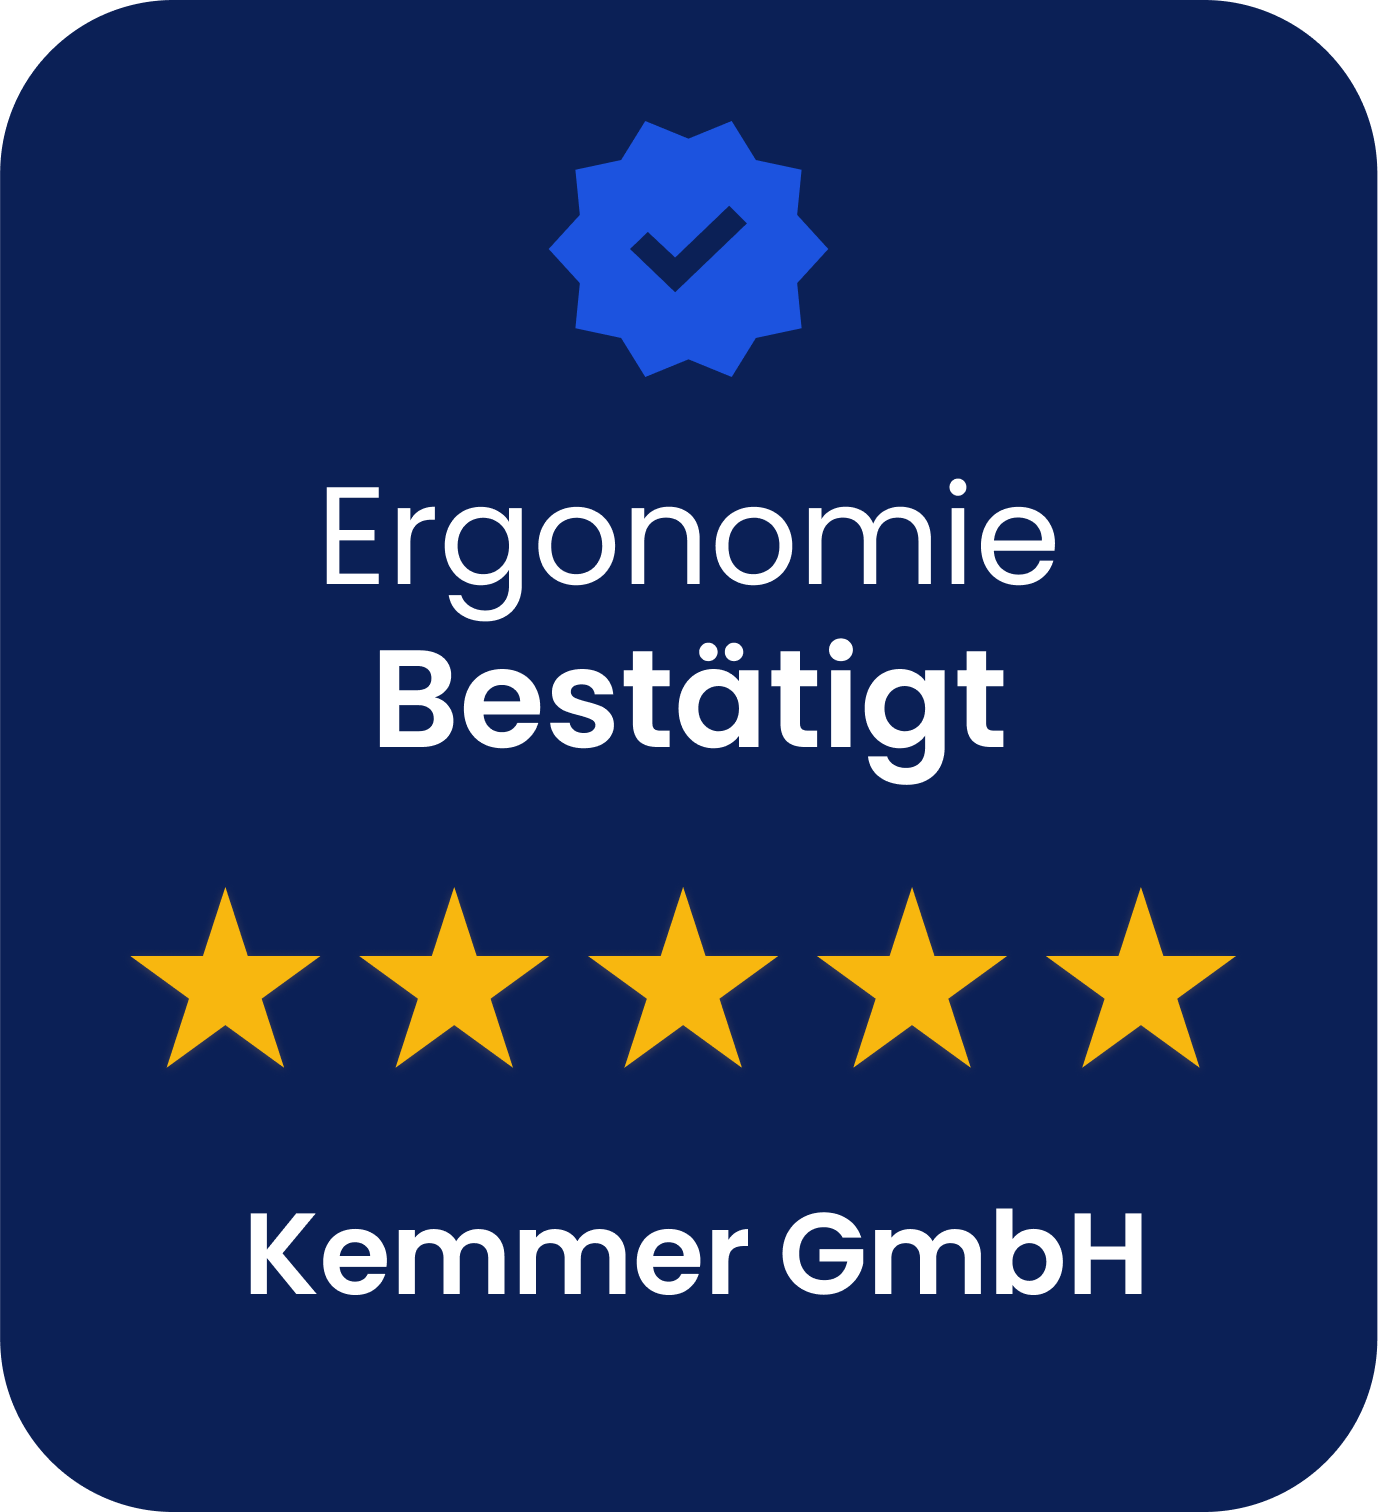 Kemmer GmbH - Hersteller von ergonomischen Bodenbelägen in DE